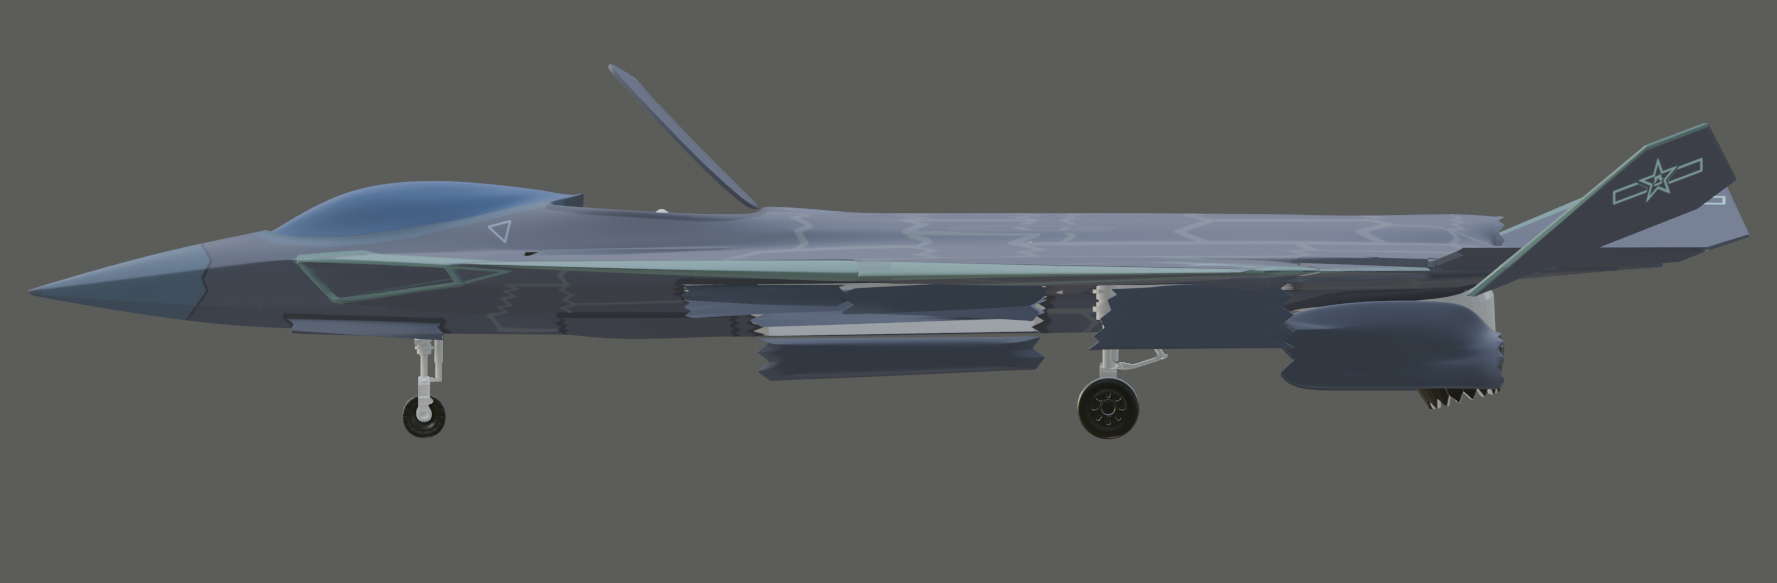 中国第四代垂直起降舰载战斗机美术设计 3d模型切勿当真